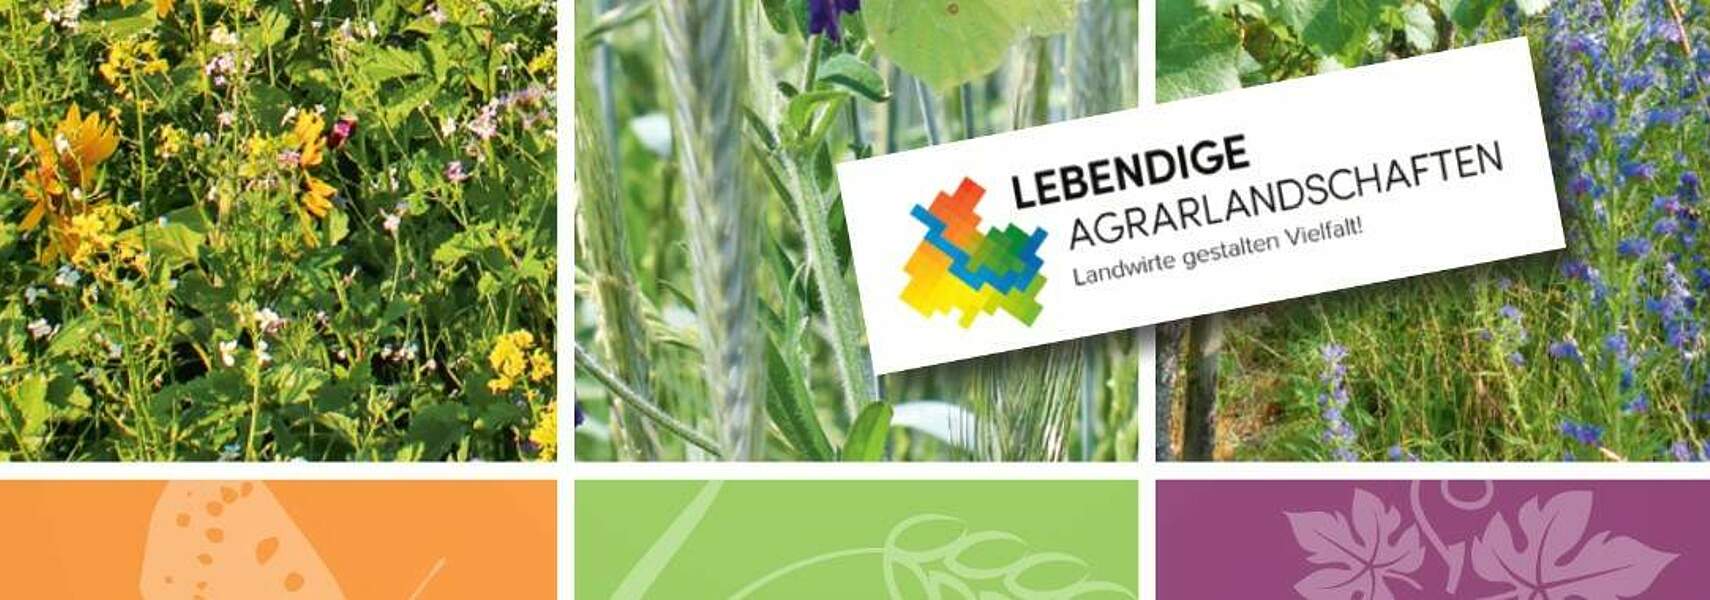 Praxis-Handbuch Lebendige Agrarlandschaften